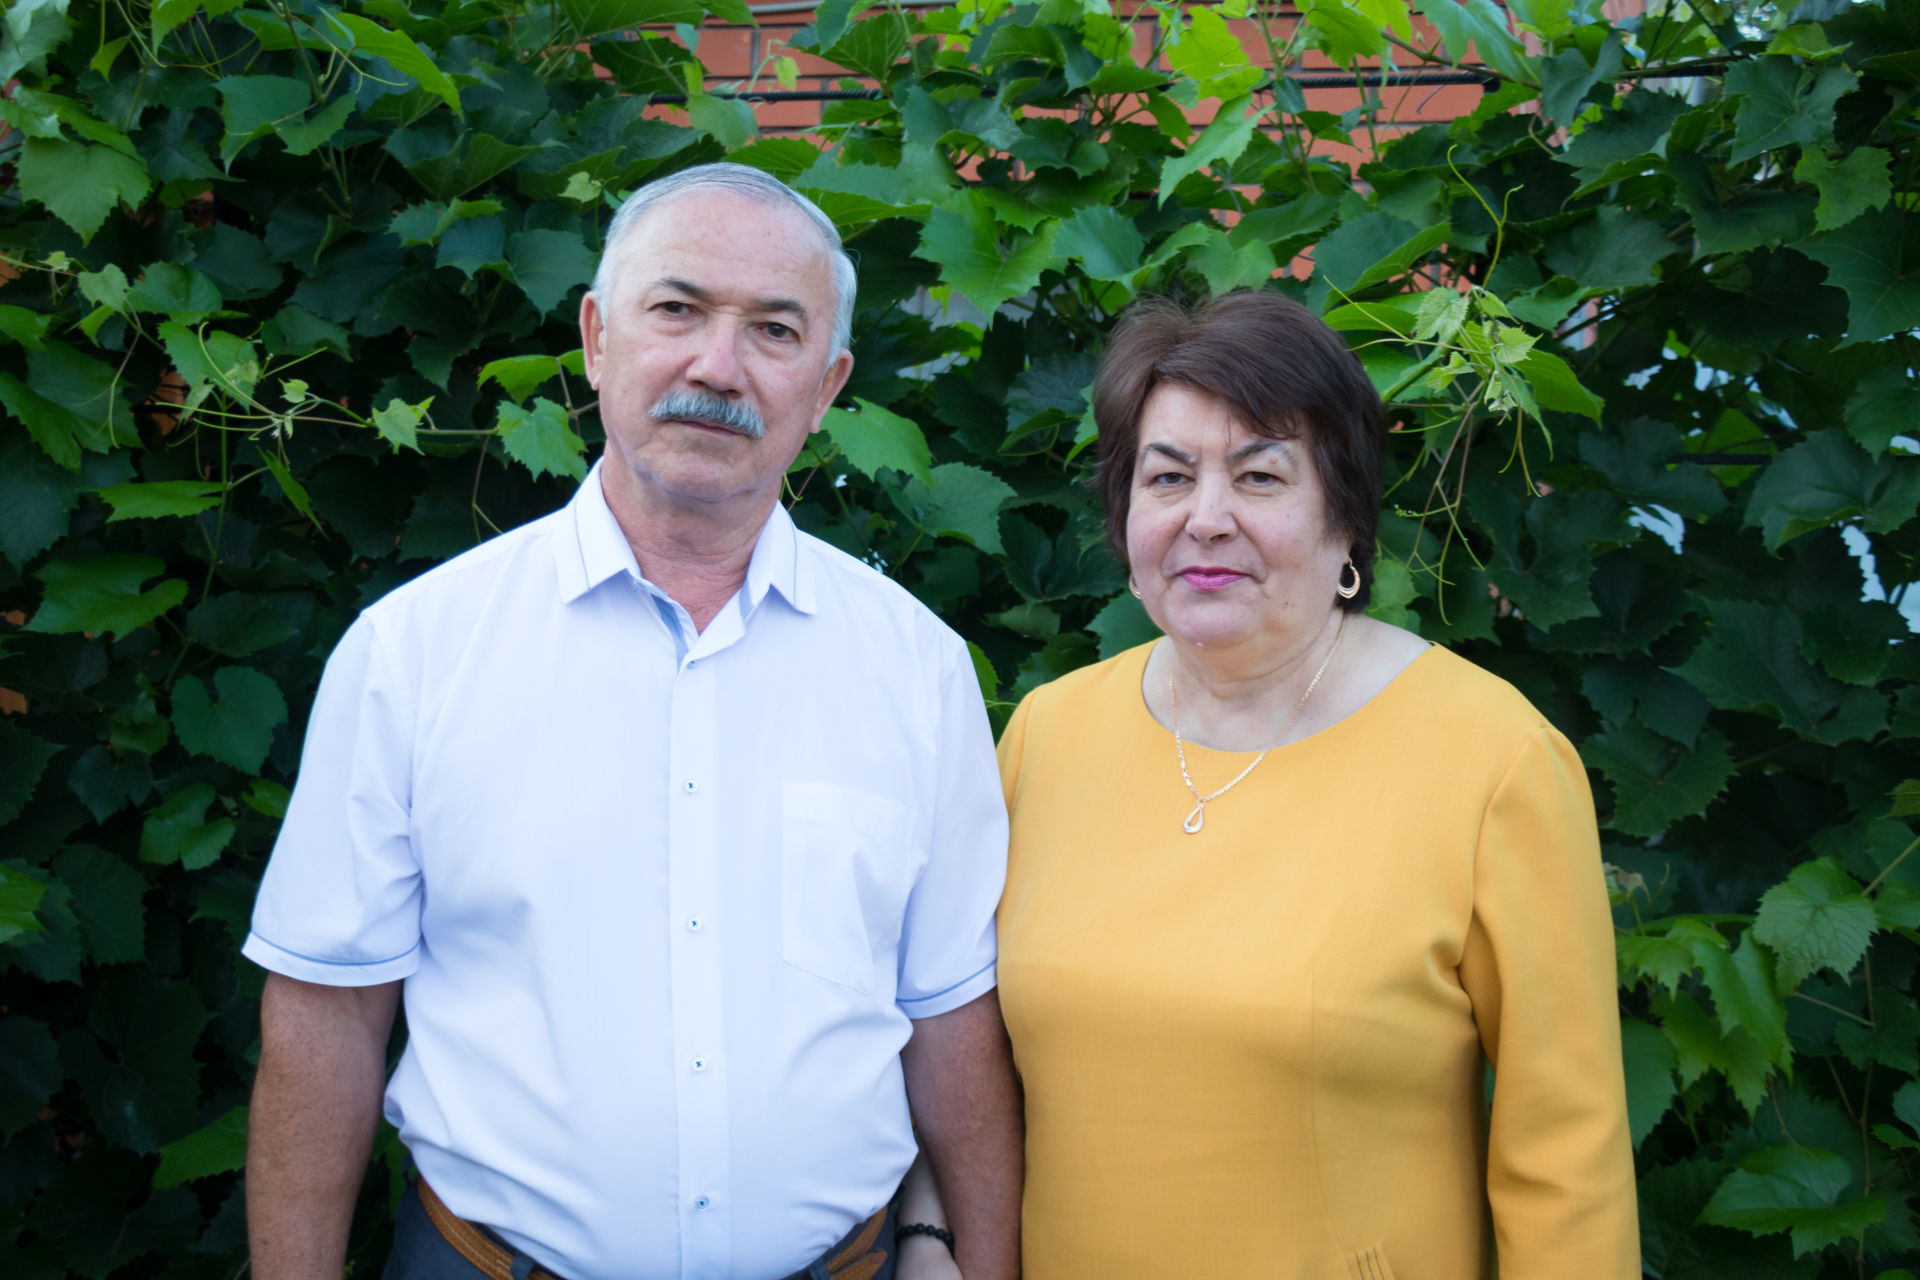 Семья Ильясовых из Азнакаево побывала в гостях у Президента